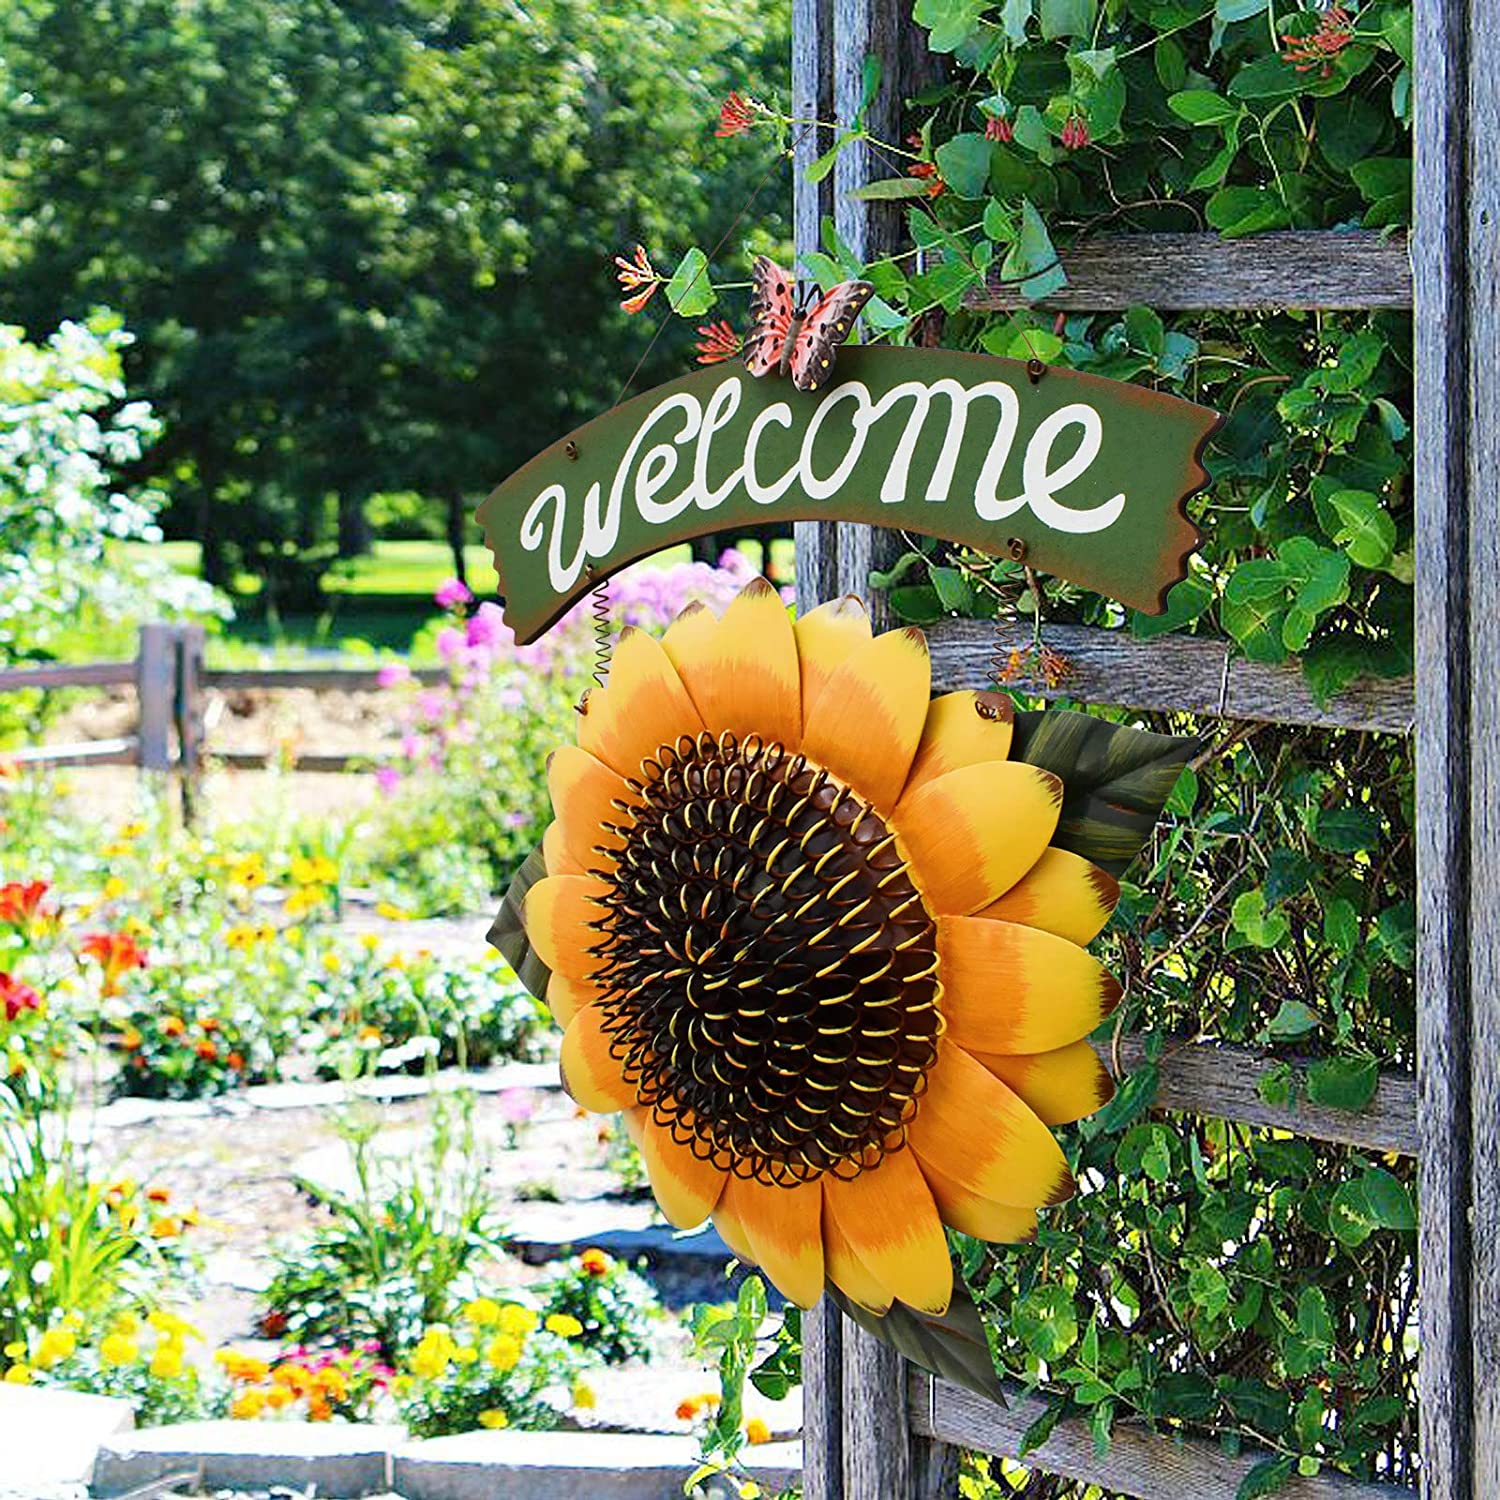 Metal Rustic Sunflower Welcome Hanging Sign Garden Wall Door Decor 16.5"X10" 